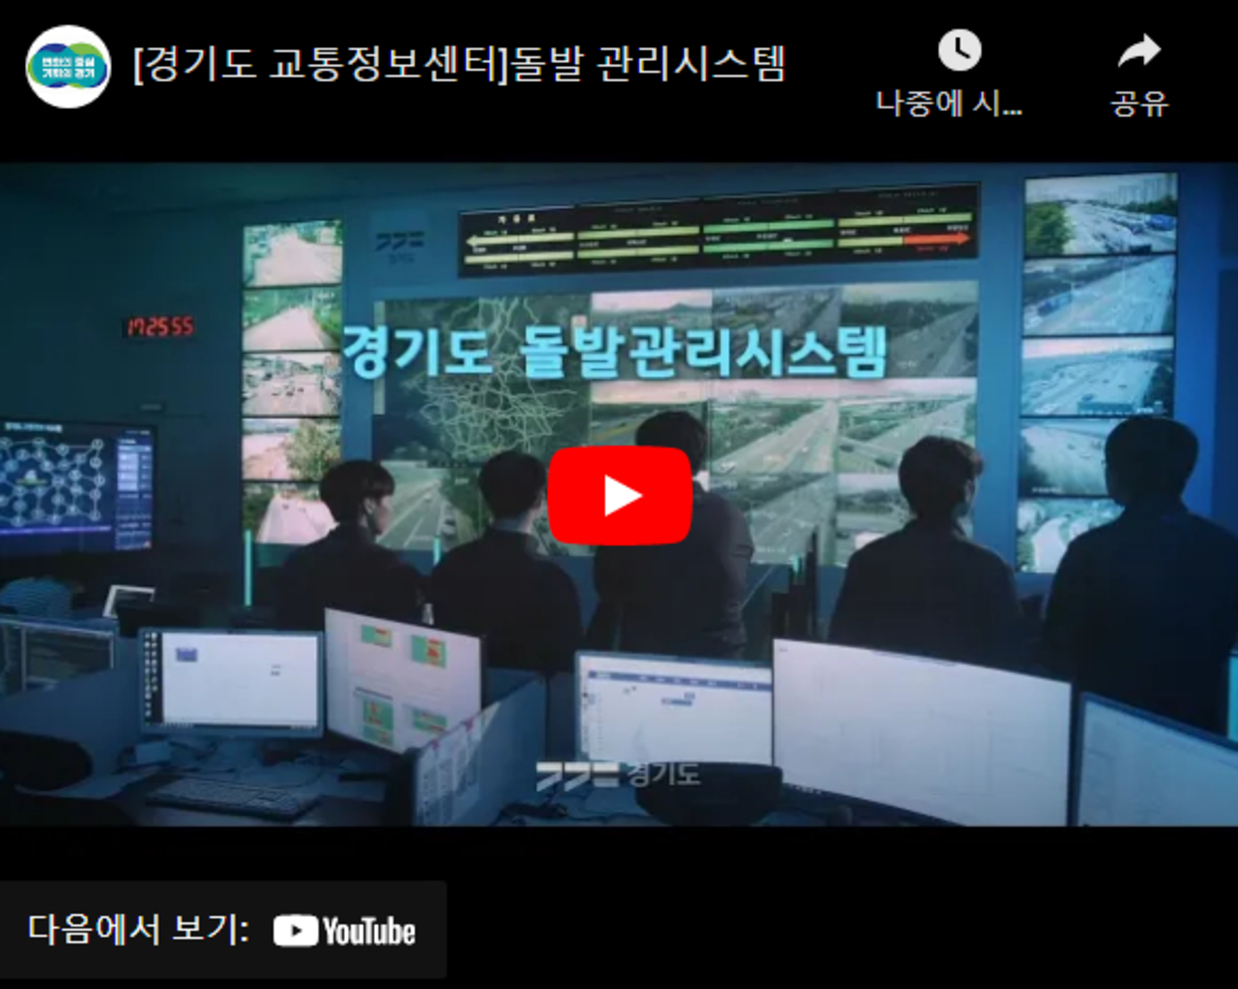 경기도 광역 긴급차량 우선신호 시스템 홍보 동영상 (3분영상)